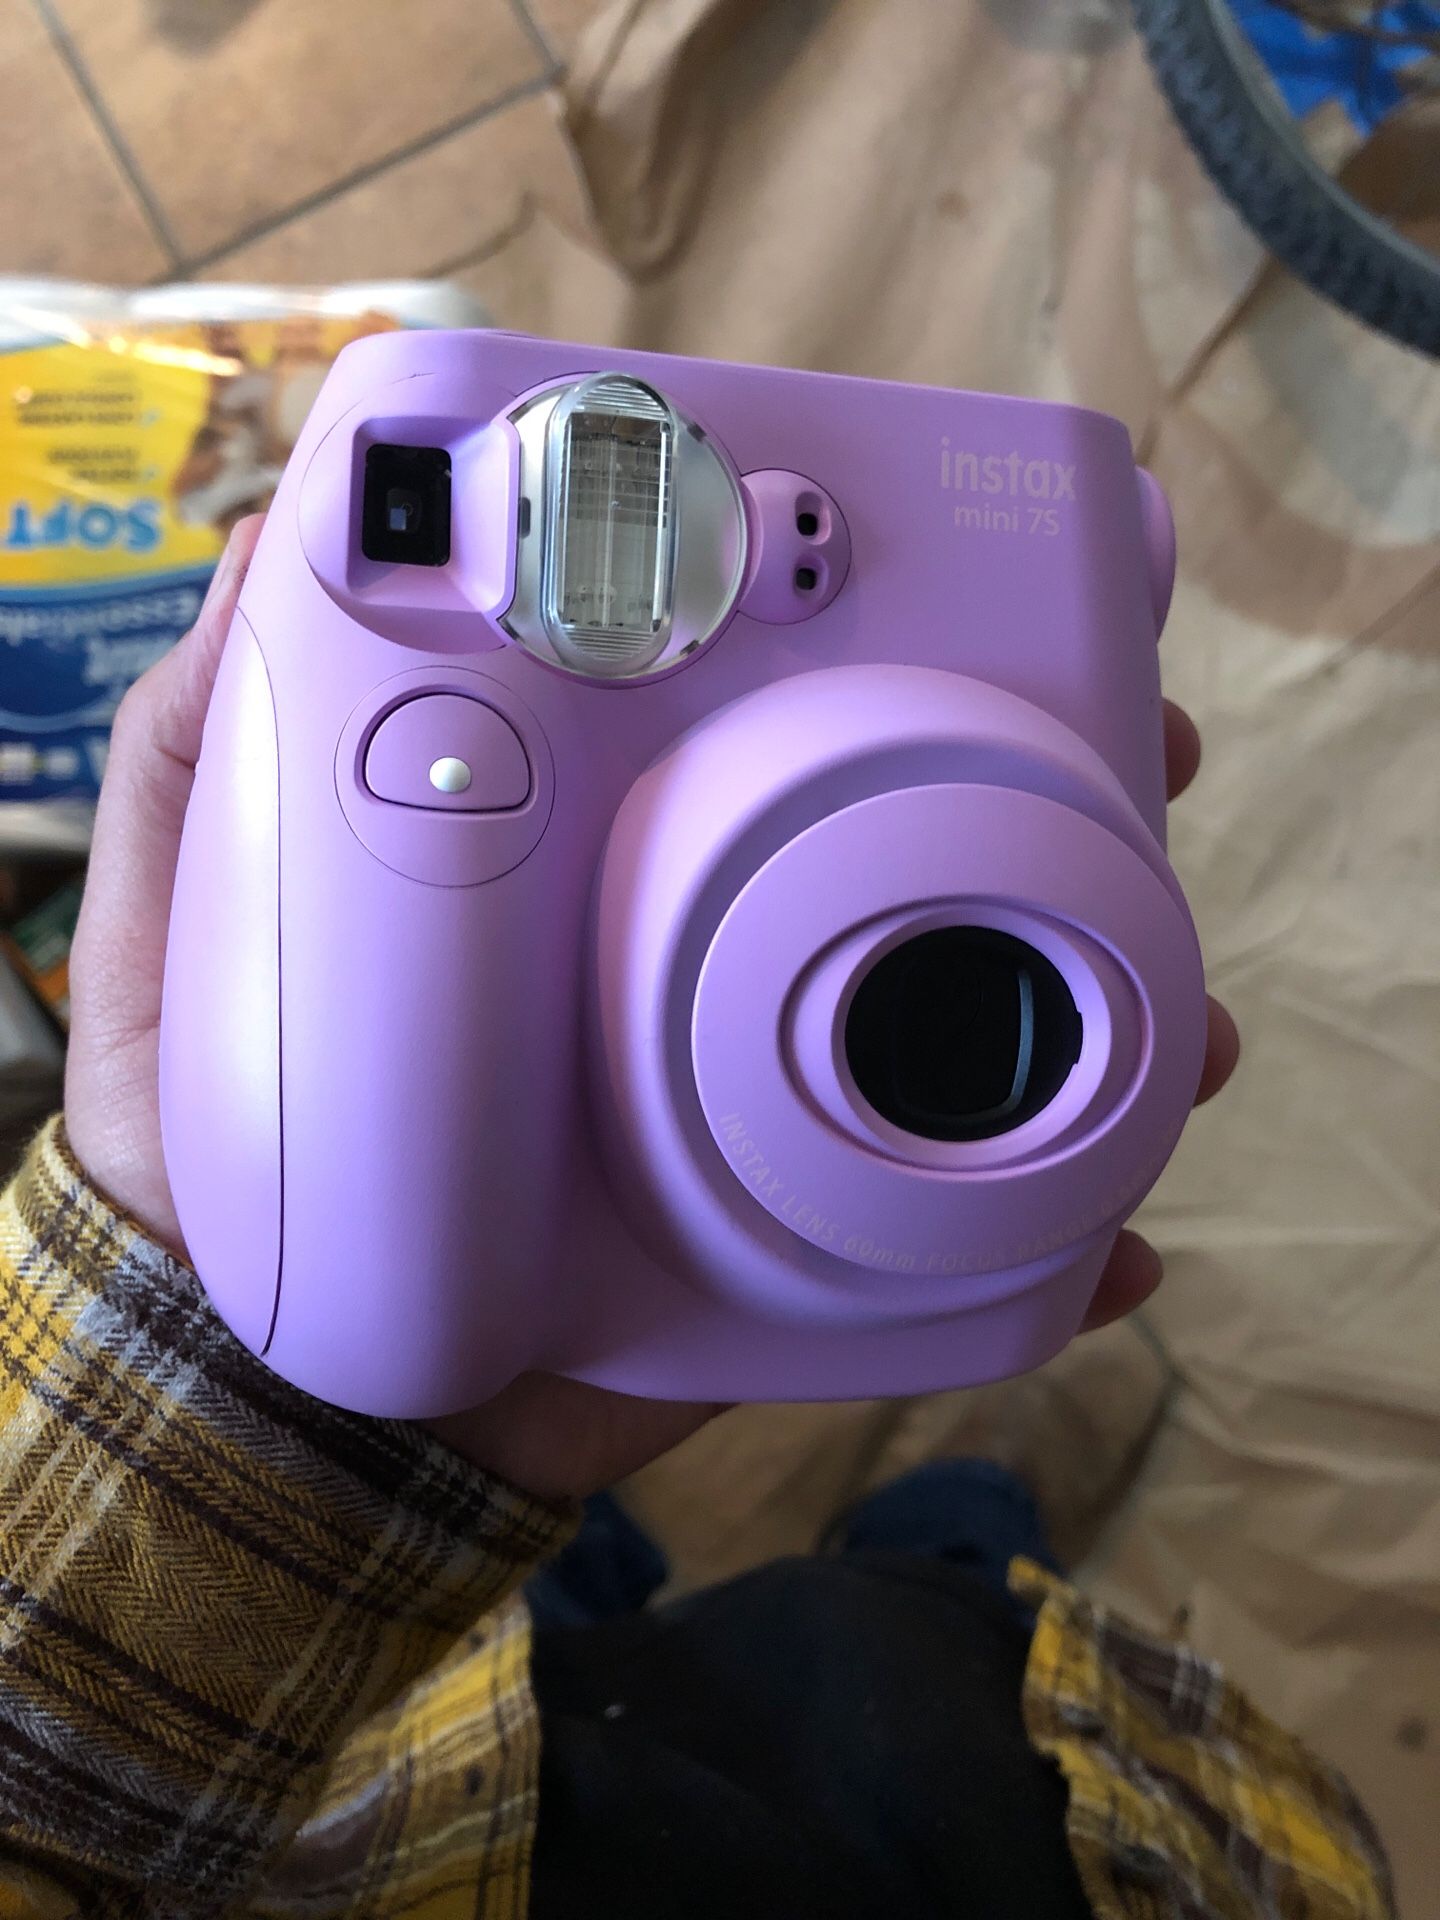 FujiFilm Camera (mini 7s)